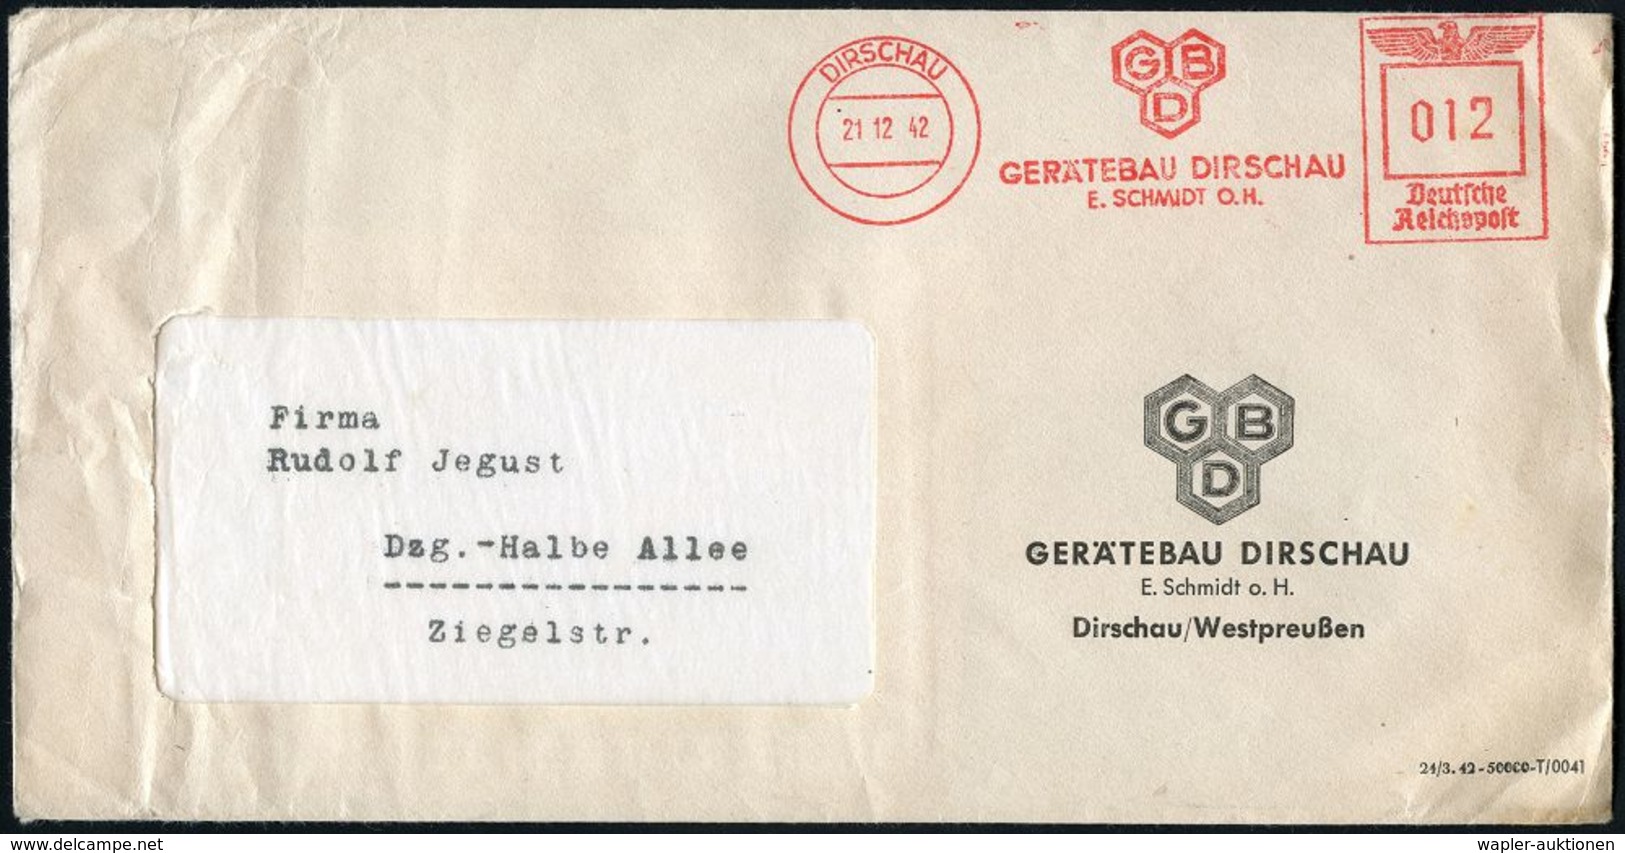 MILITÄRFLUGWESEN / MILITÄRFLUGZEUGE : DIRSCHAU/ GBD/ GERÄTEBAU DIRSCHU/ E.SCHMIDT O.H. 1942 (21.12.) Sehr Seltener AFS ( - Airplanes